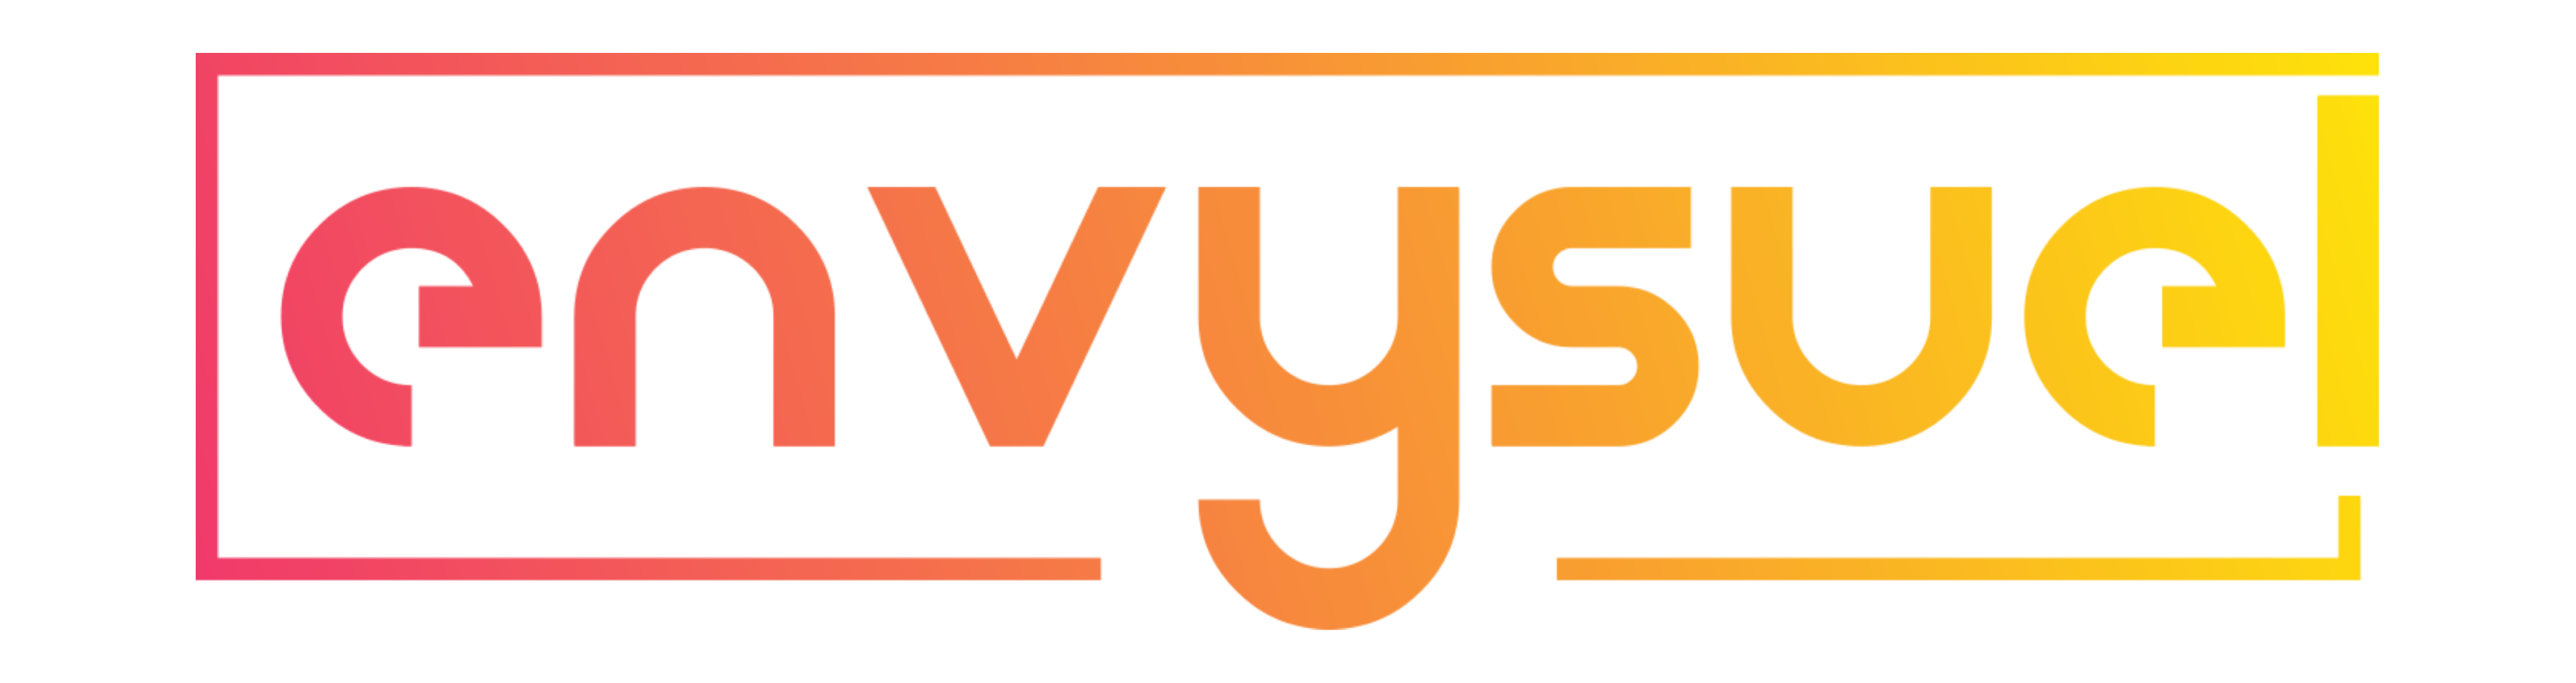 Logo couleur ENVYSUEL